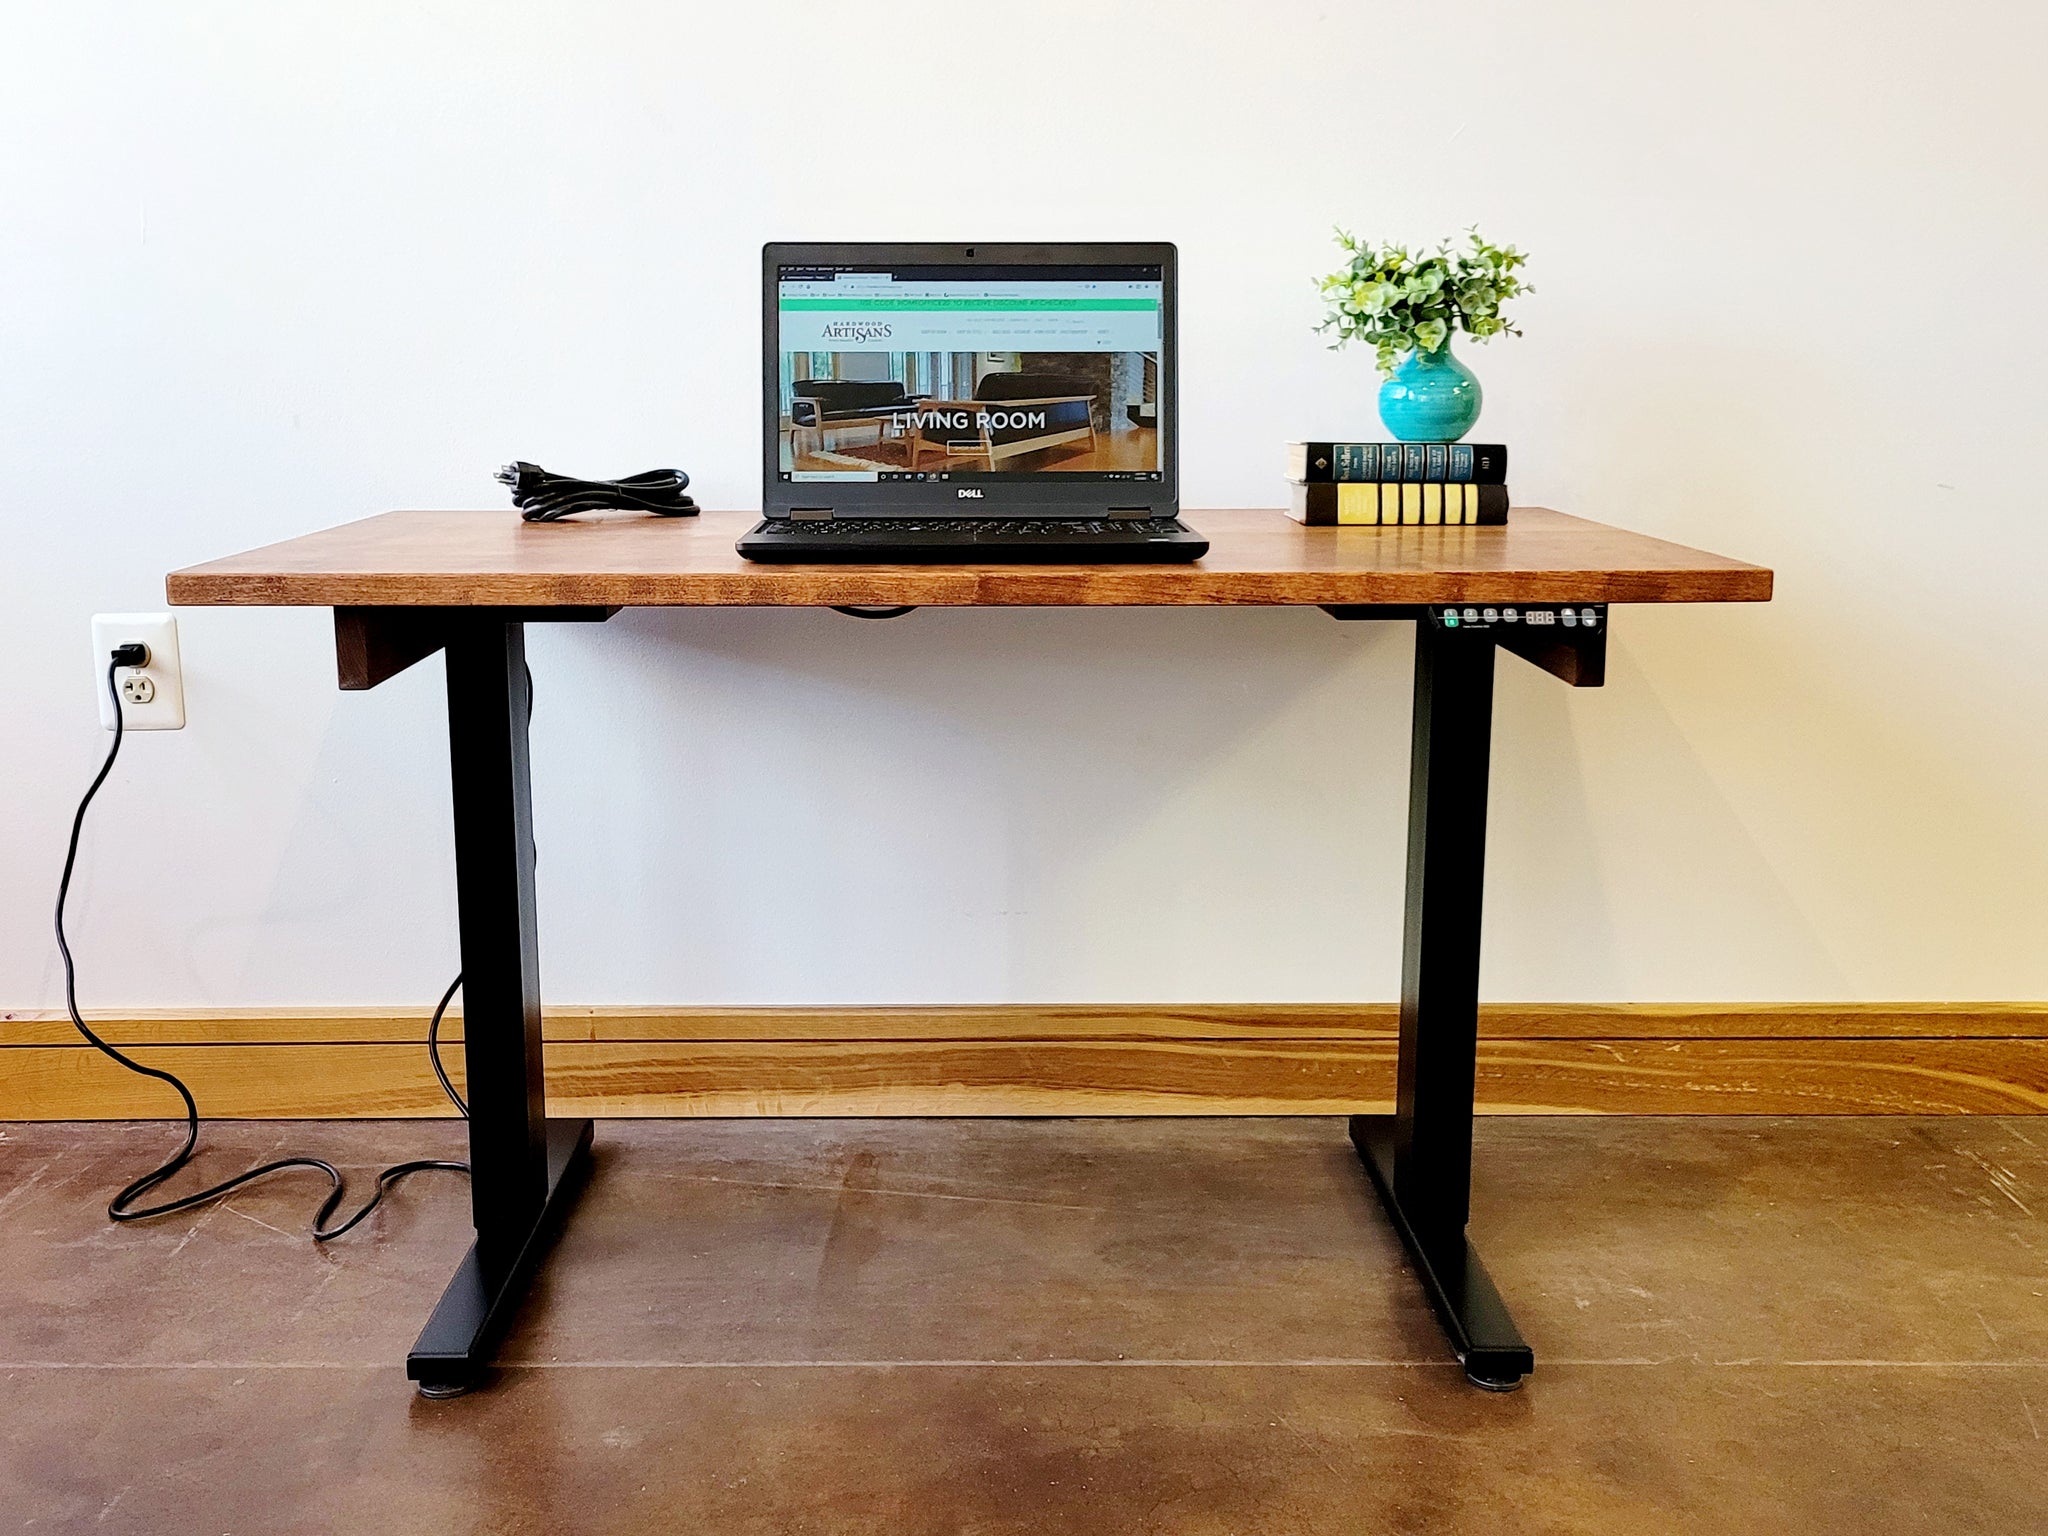 WFH Sitting Desk, Home Office Desk, US Made